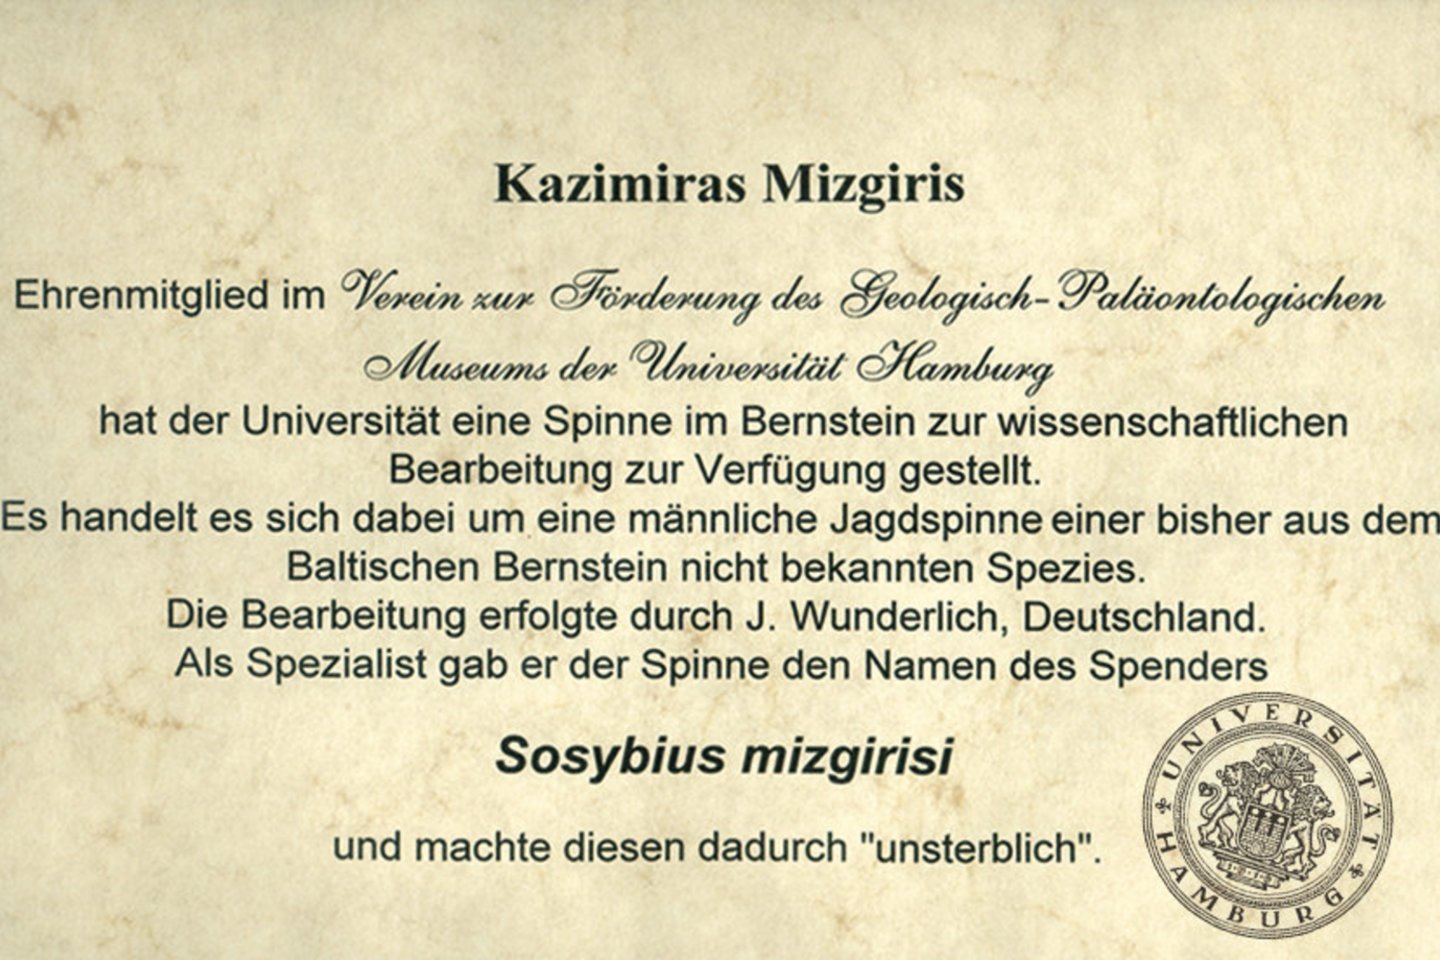 Hamburgo universitetas K.Mizgiriui pranešė, kad voras pavadintas jo vardu.<br> Mizgirių muziejaus nuotr.